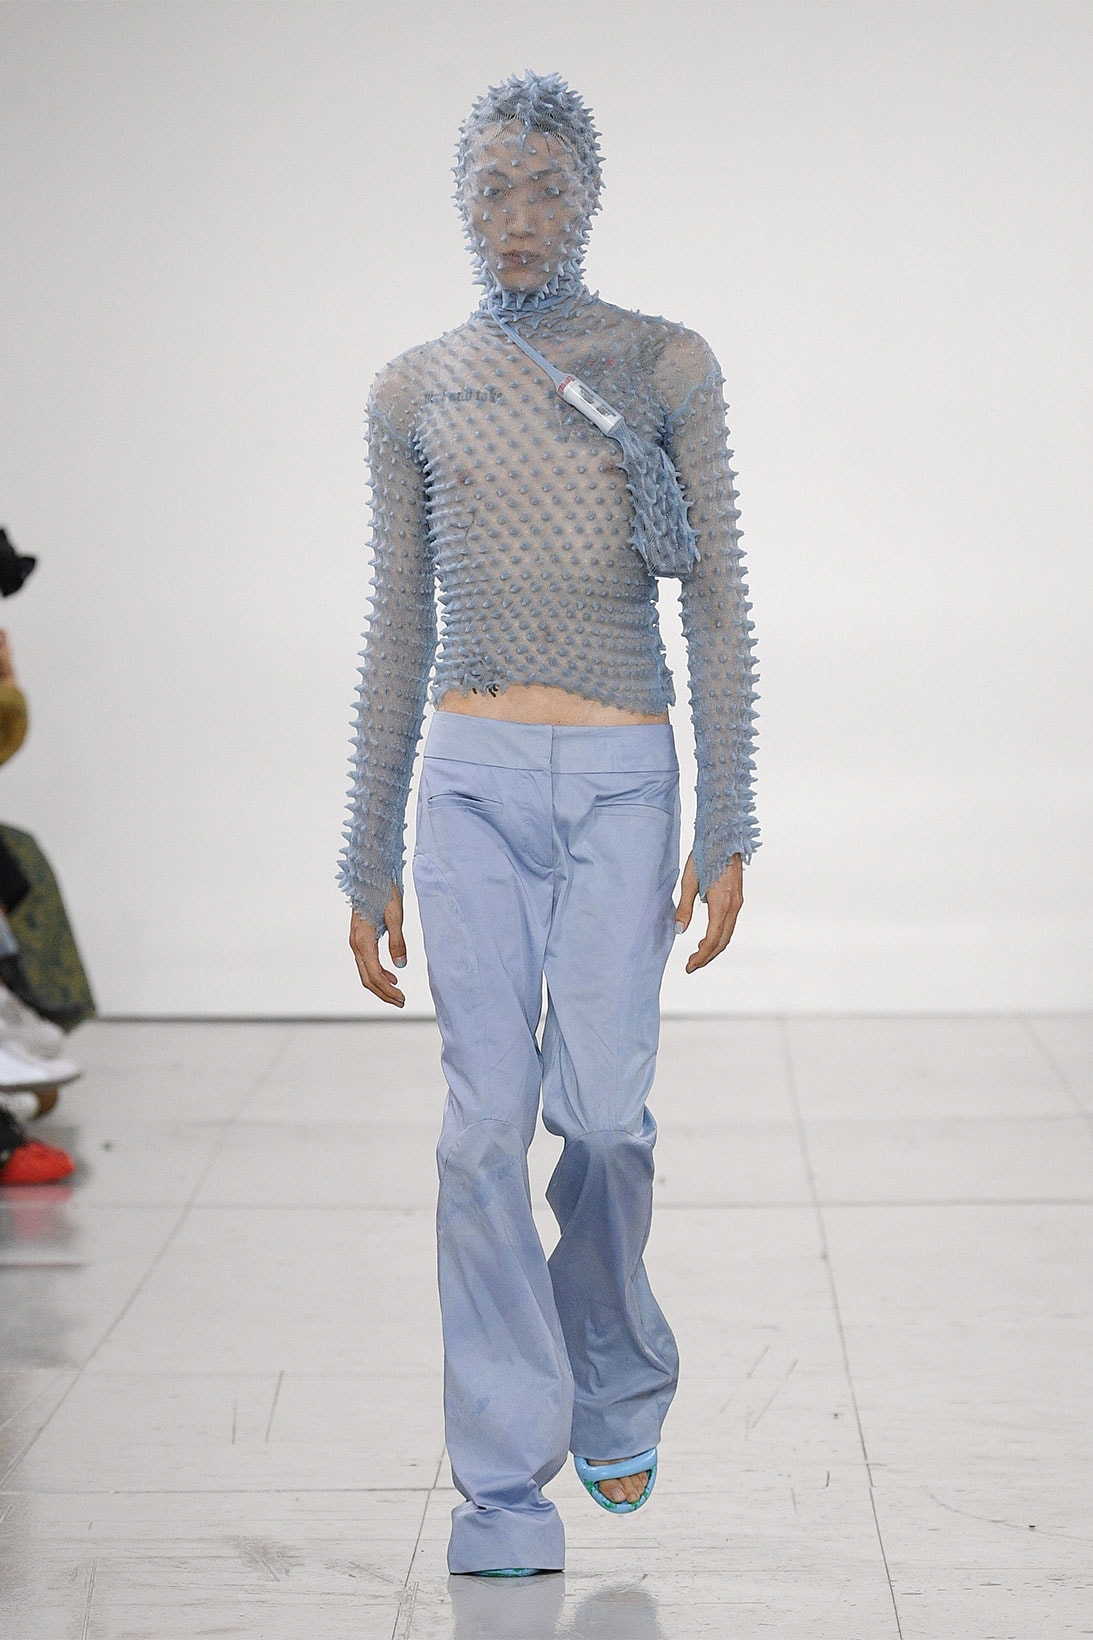 Chet Lo Makes Runway Debut at London Fashion Week | Hypebae